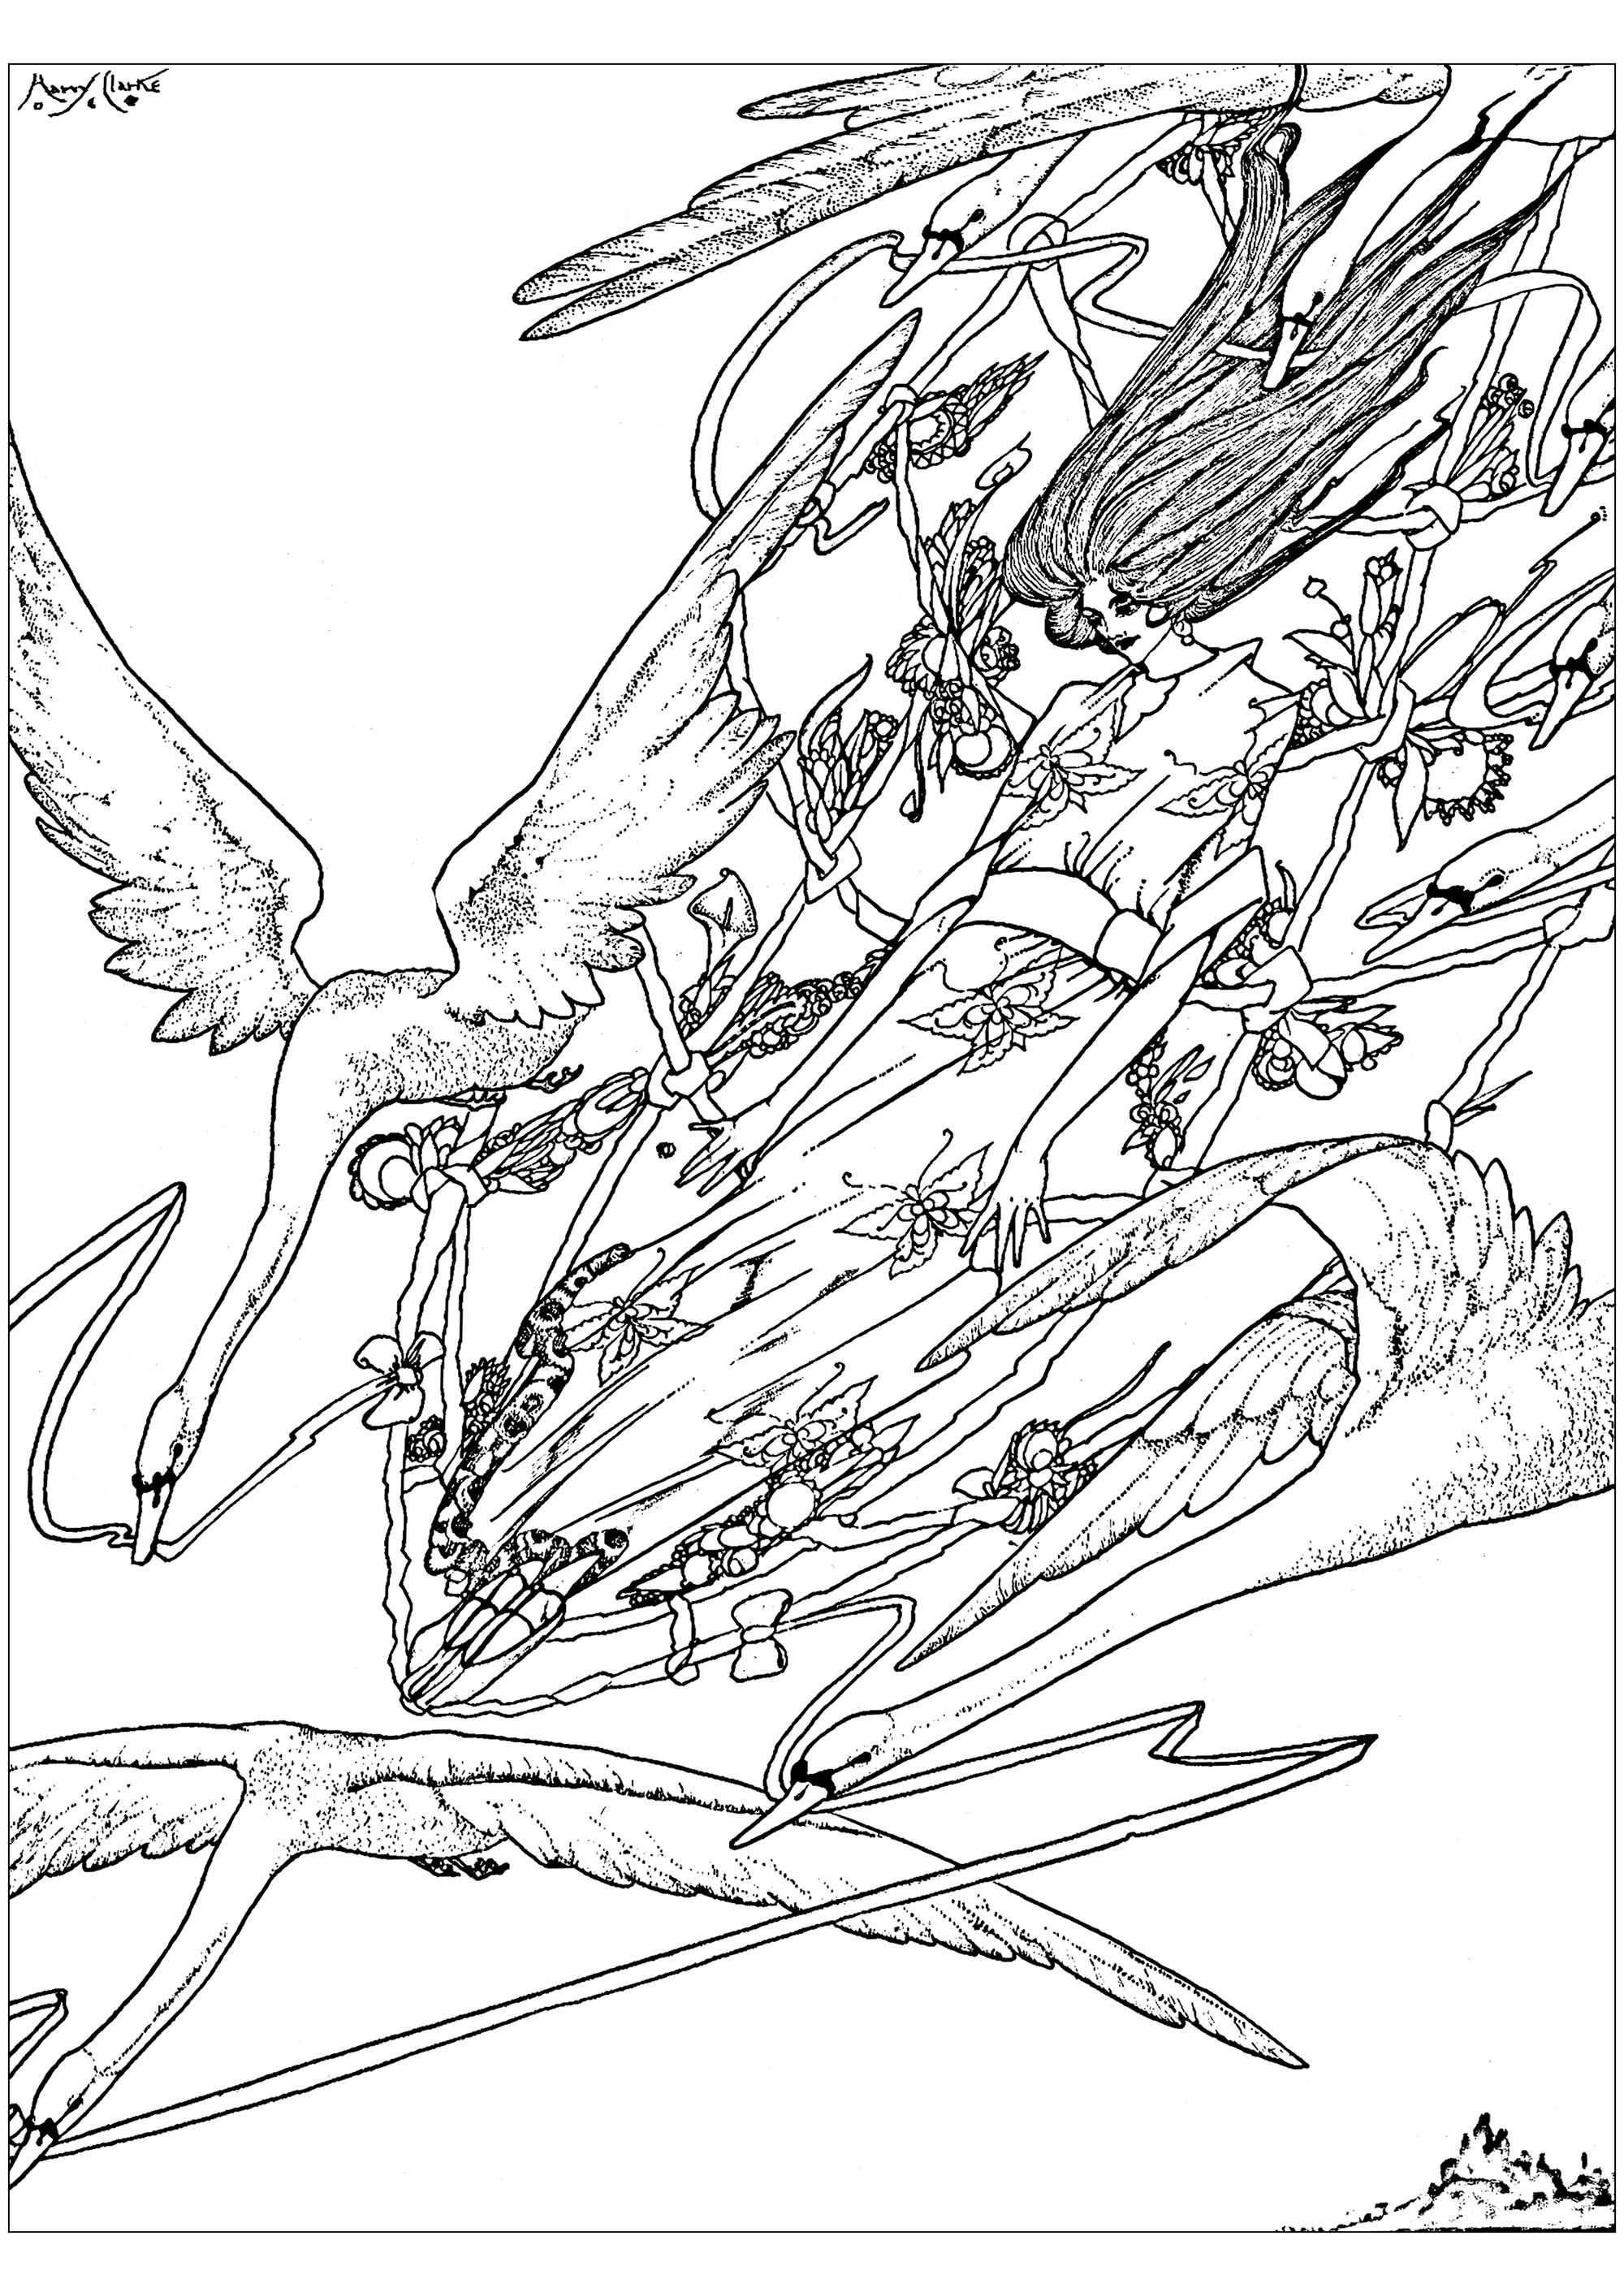 Coloreado creado a partir de una ilustración de 1916 de Harry Clarke, para ilustrar 'Los gansos salvajes', un cuento de hadas de Hans Christian Andersen. Esta obra se inspira en el estilo Arts and Crafts.